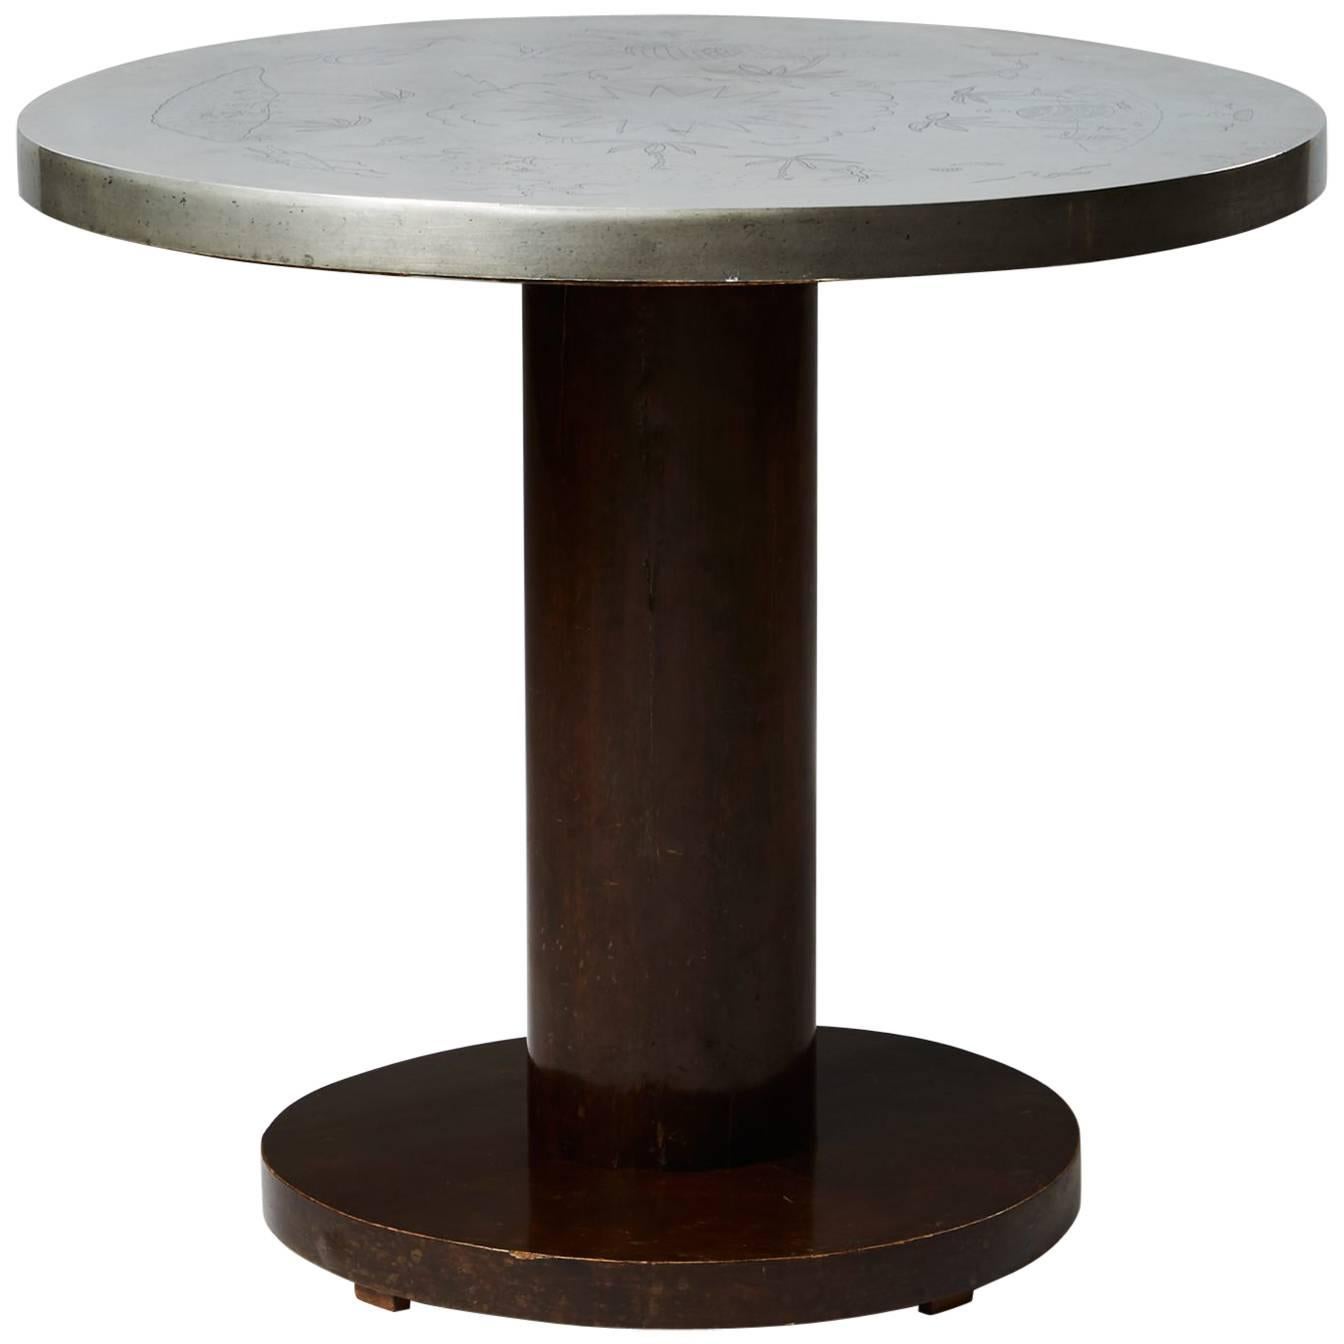 Occasional Table Designed by Nils Fougstedt for Svenskt Tenn, Sweden, 1933